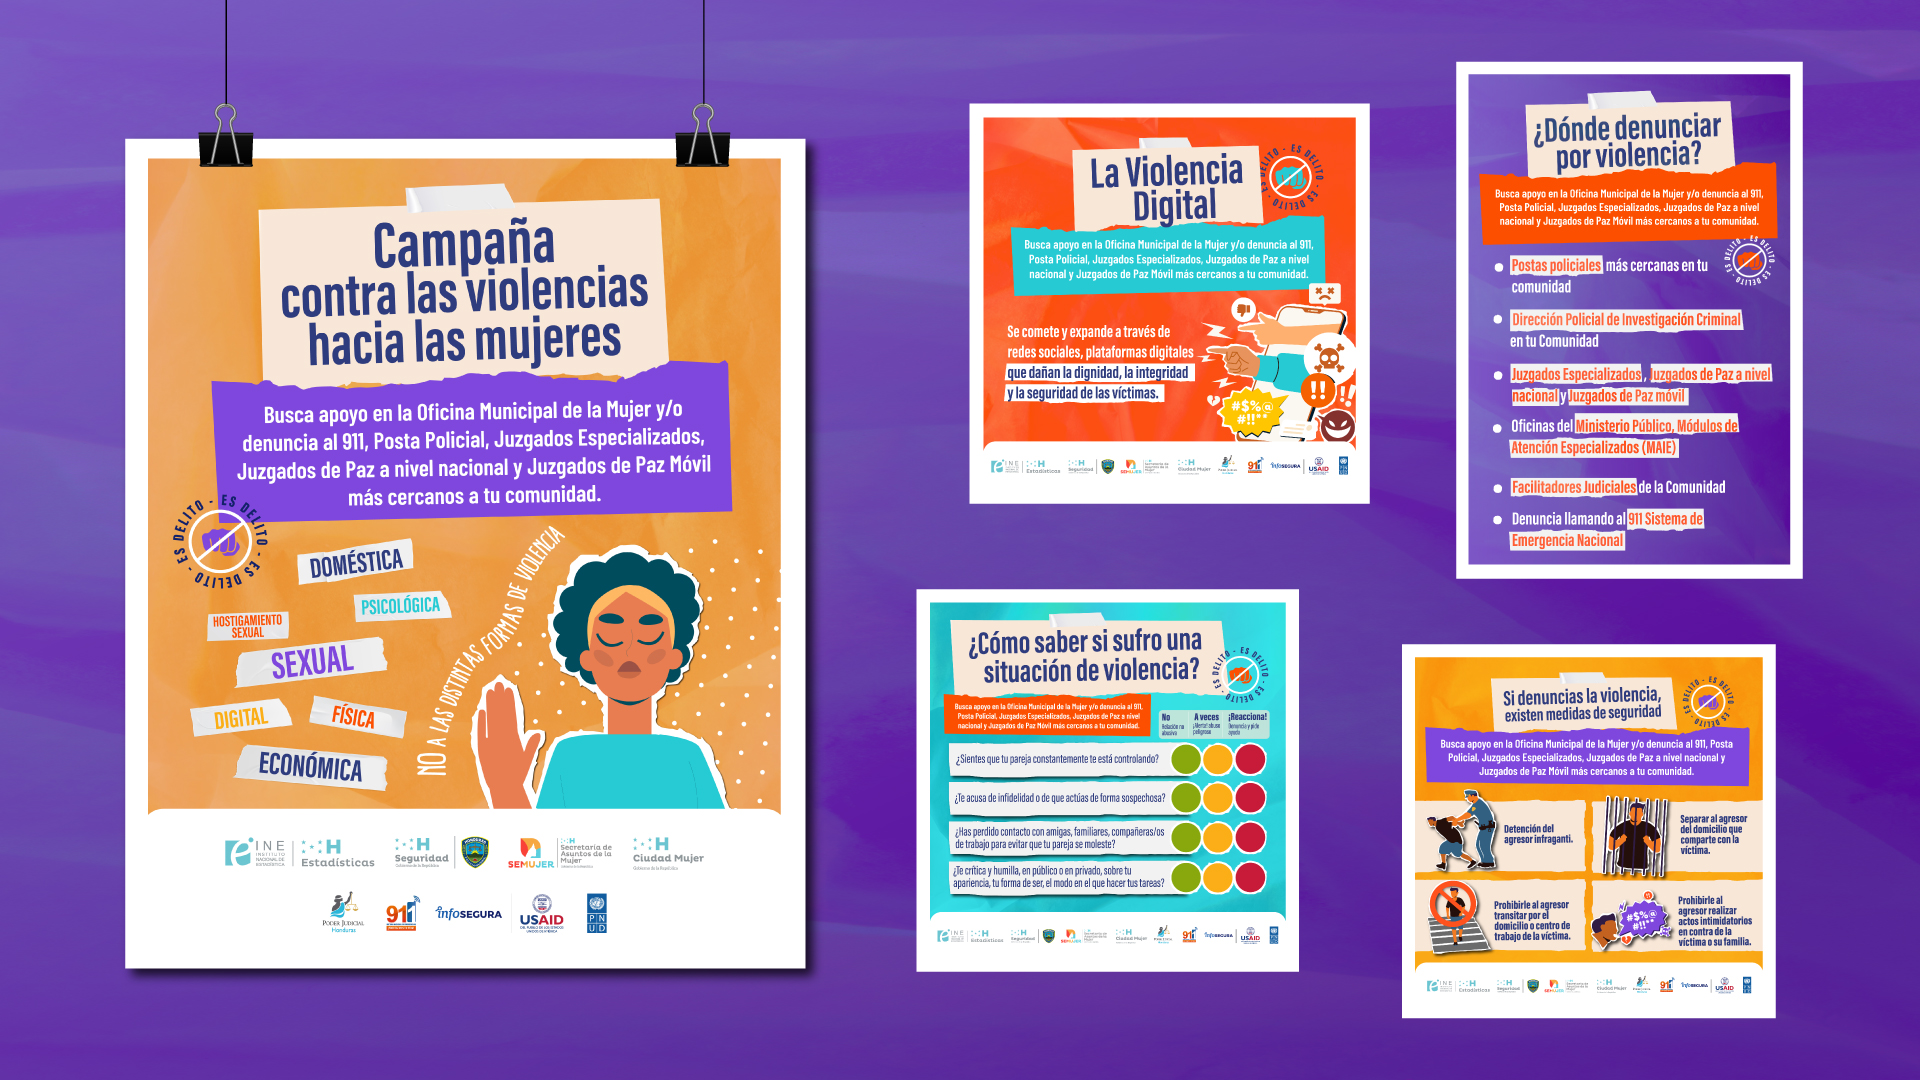 Set de piezas publicitarias desarrolladas para campaña contra violencia contra las mujeres